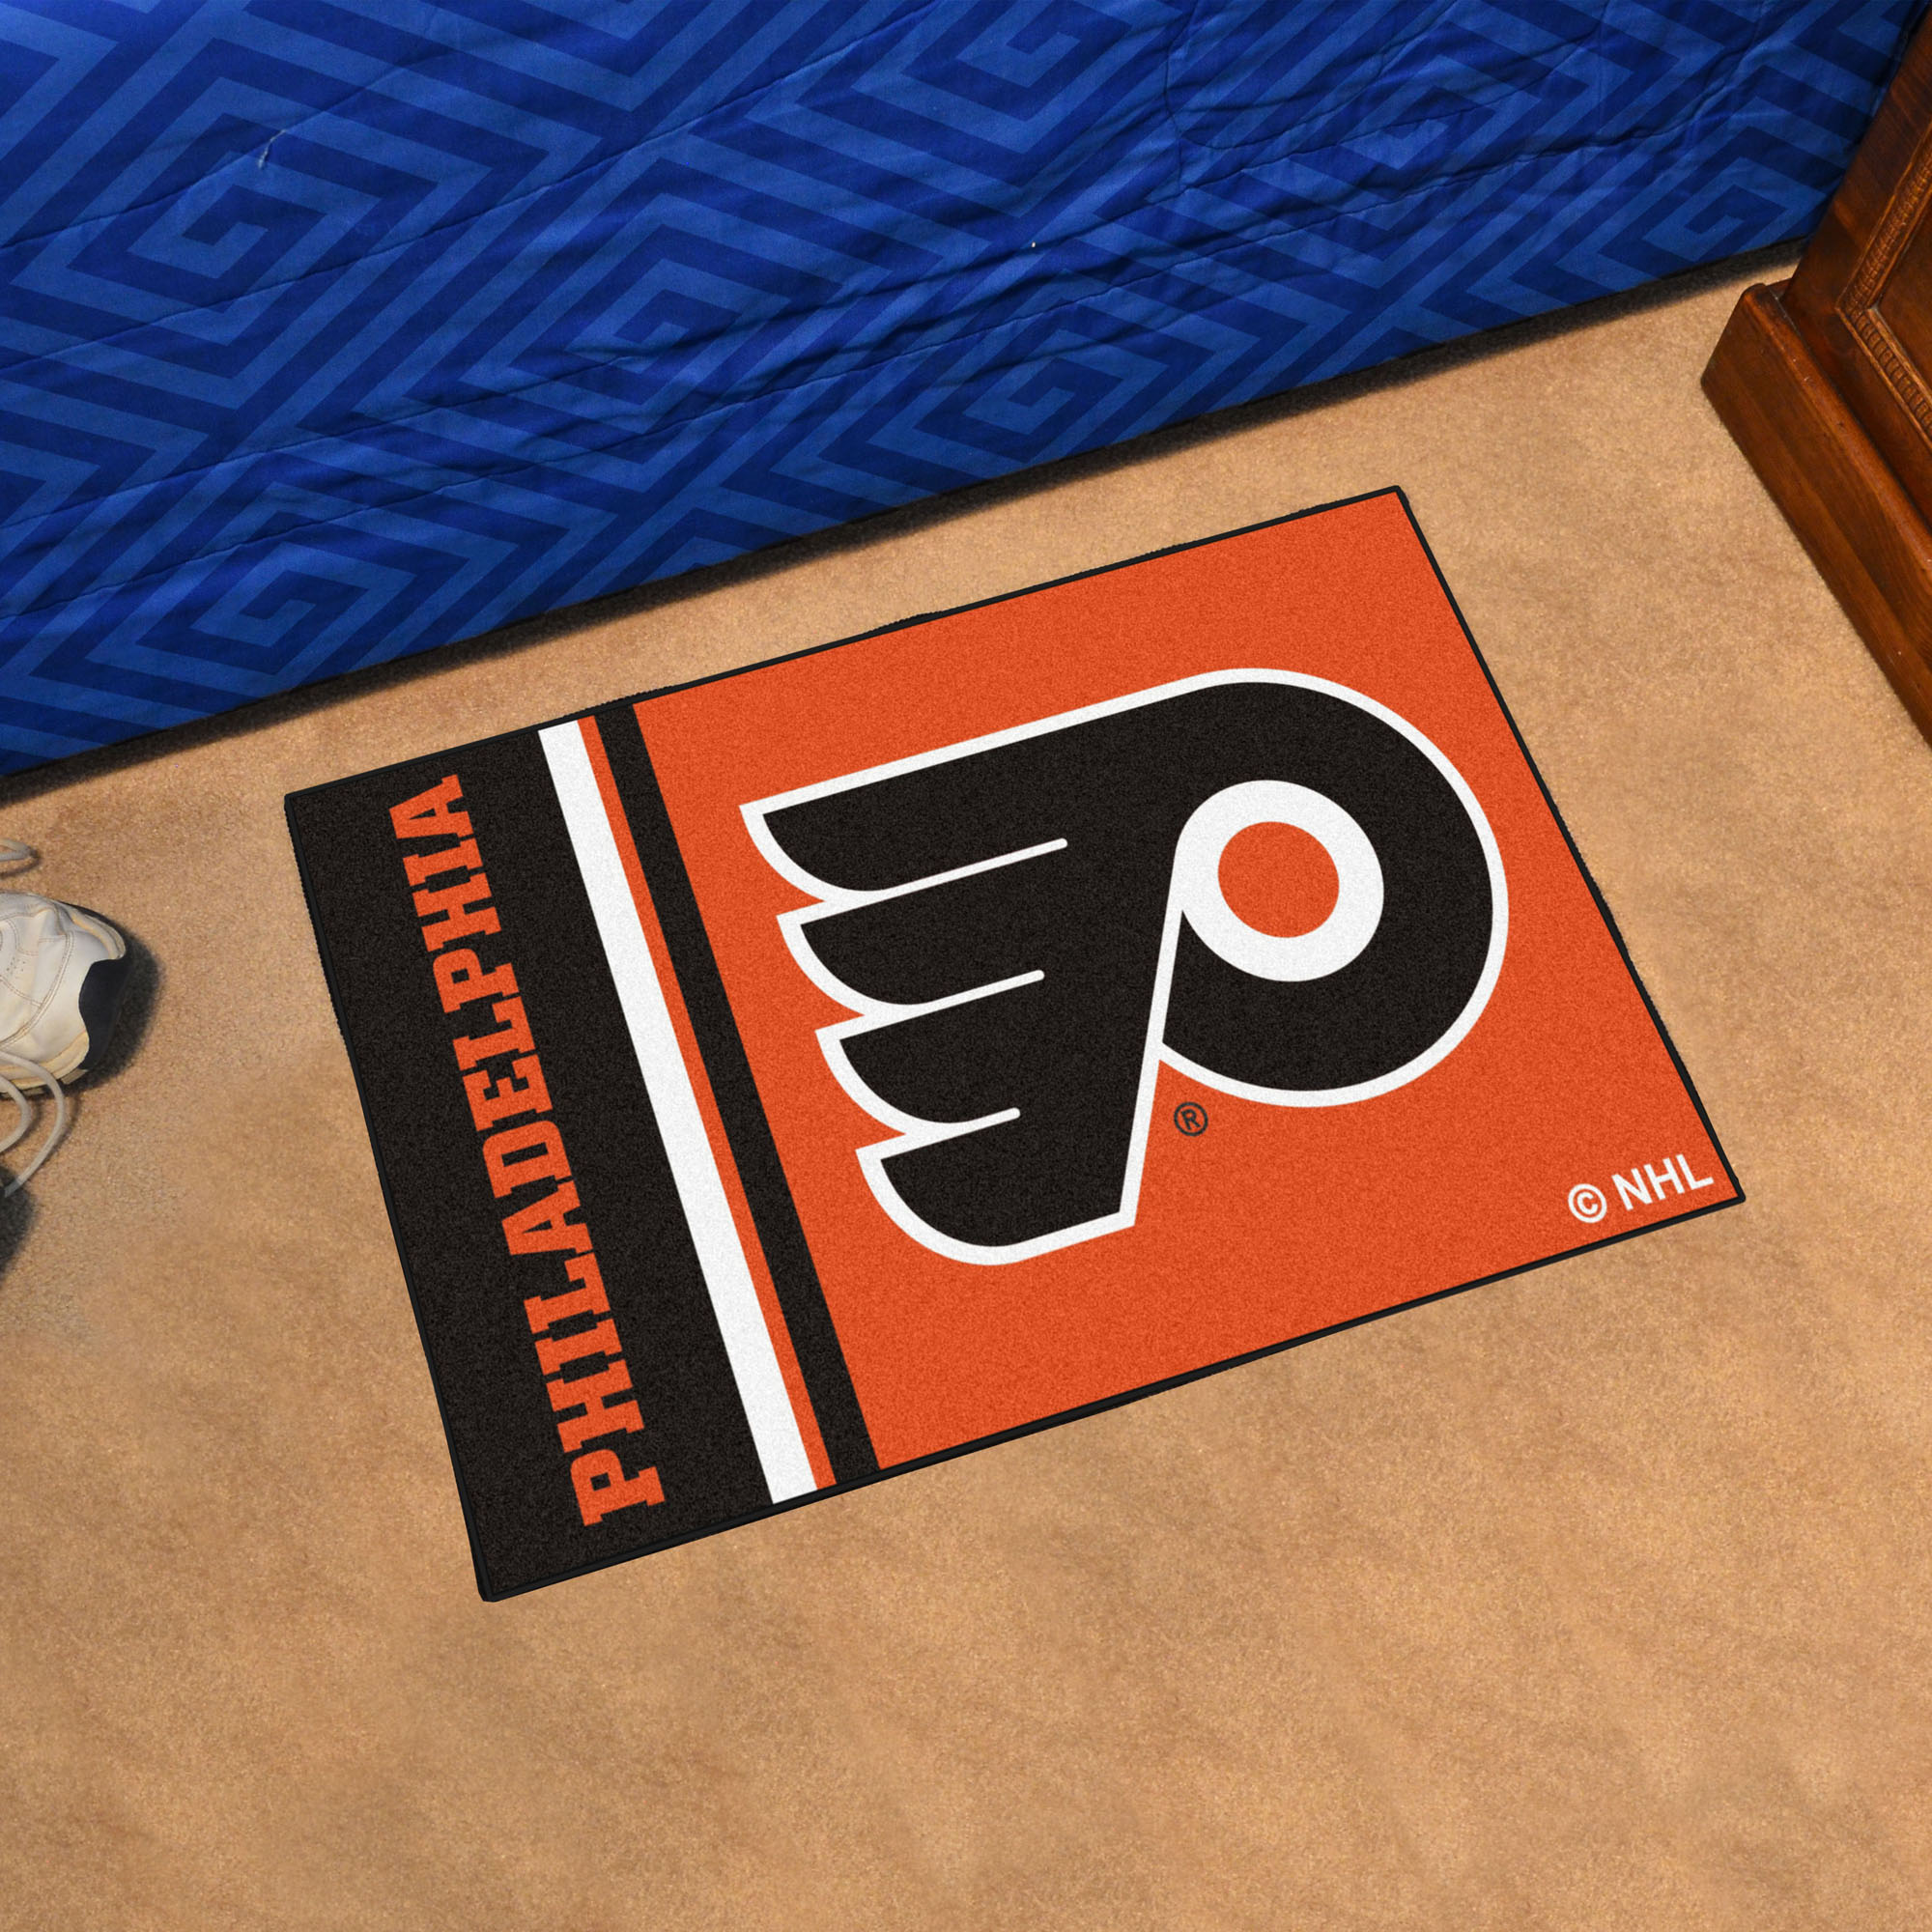 Philadelphia Flyers 20 x 30 Uniform Inspired Starter Rug